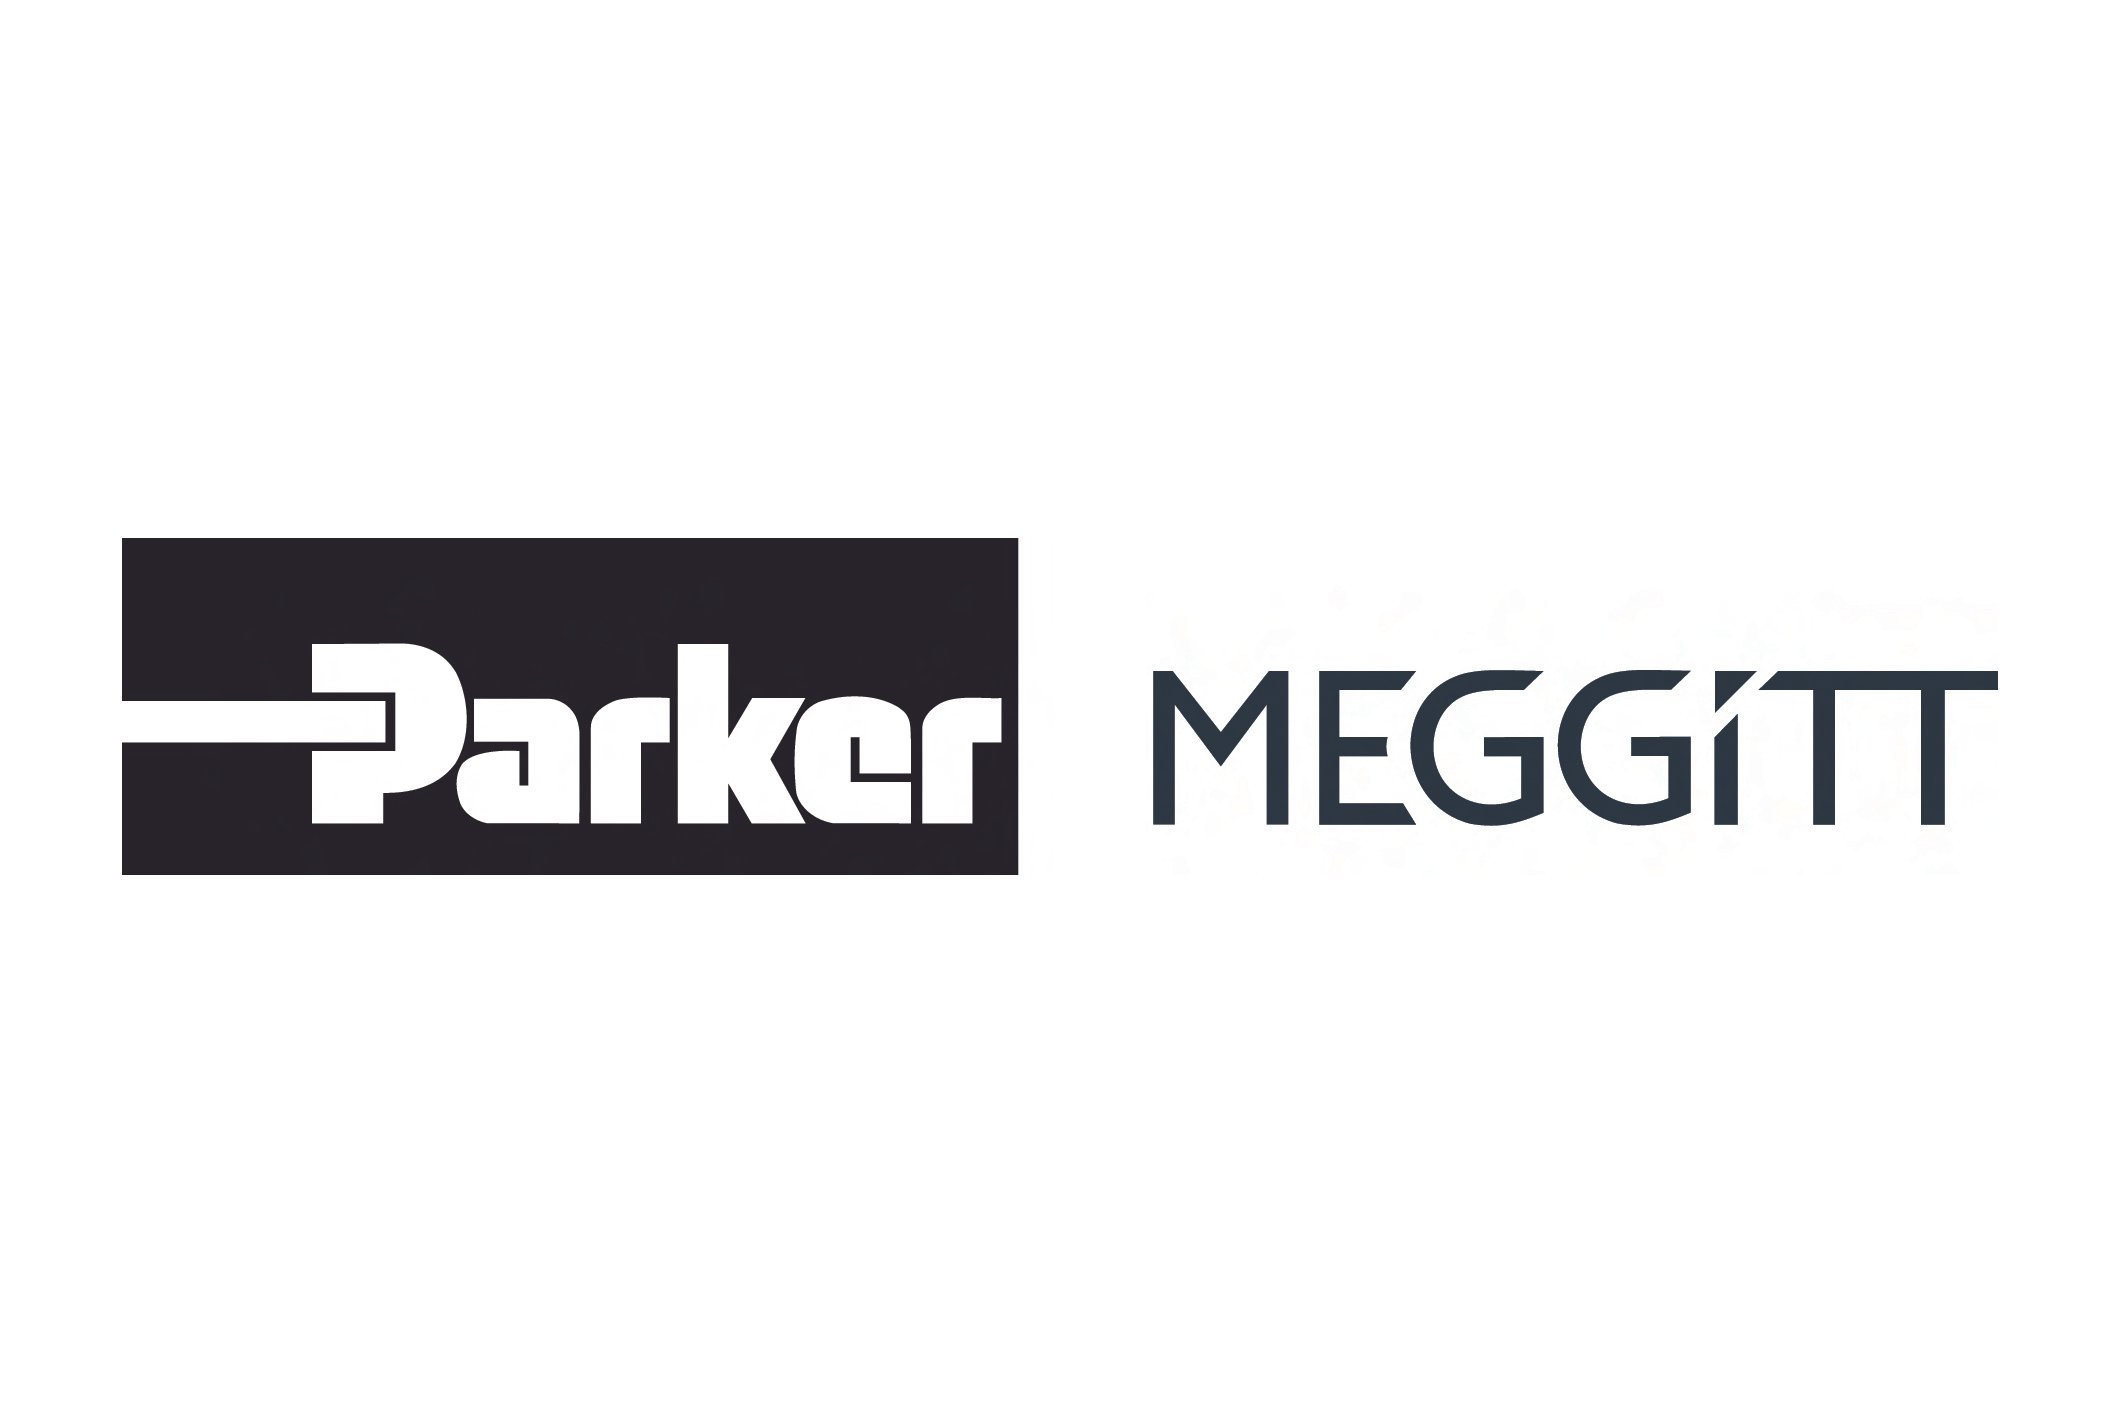 Parker_Meggitt_Transitional_Logo_3x2.jpg